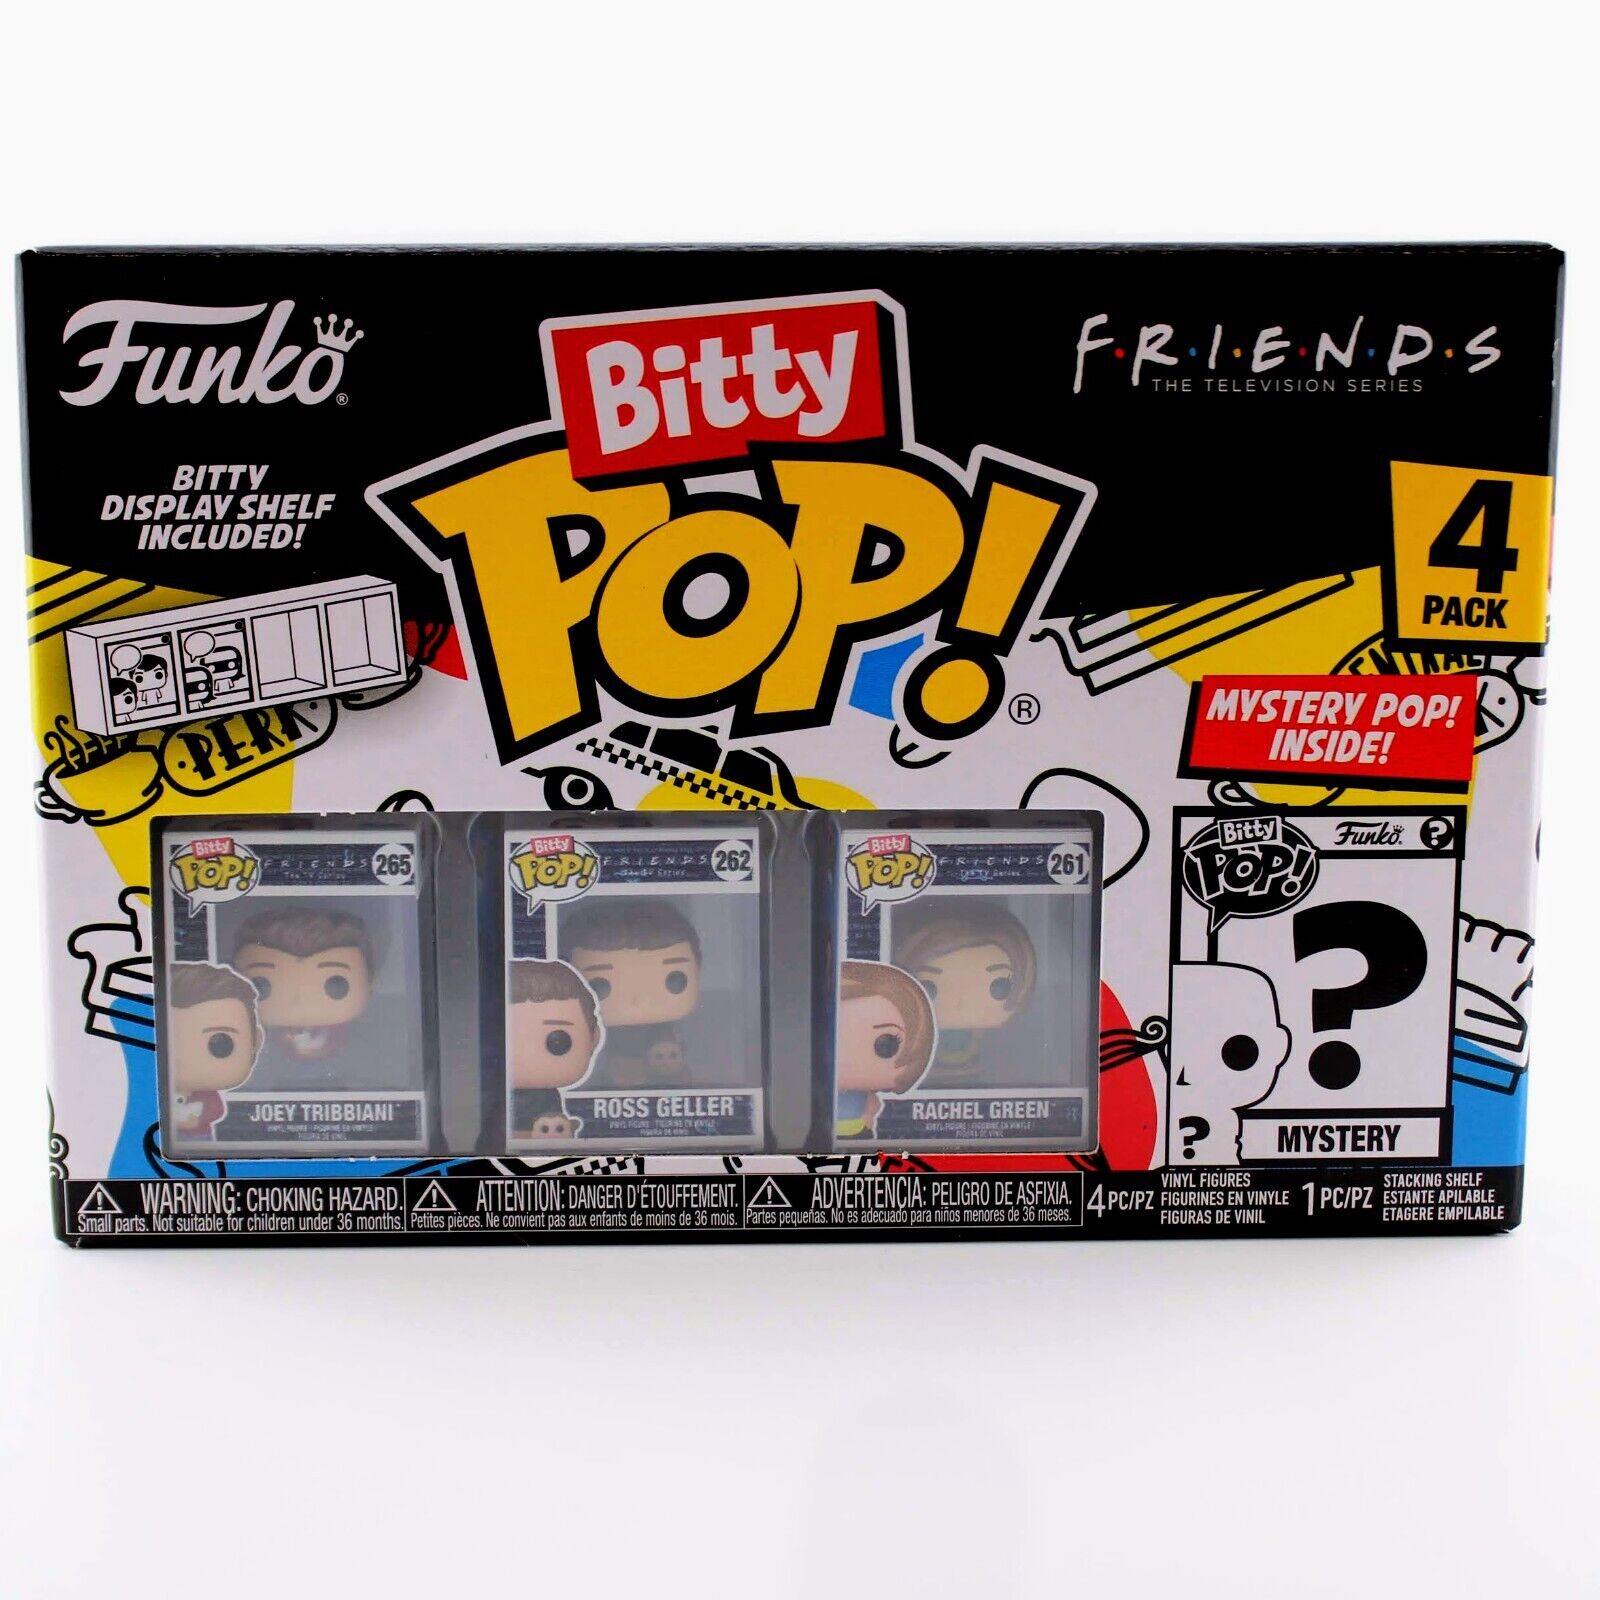 Funko Bitty Pop Friends - Joey / Ross / Rachel 4 Pack Mini Figure